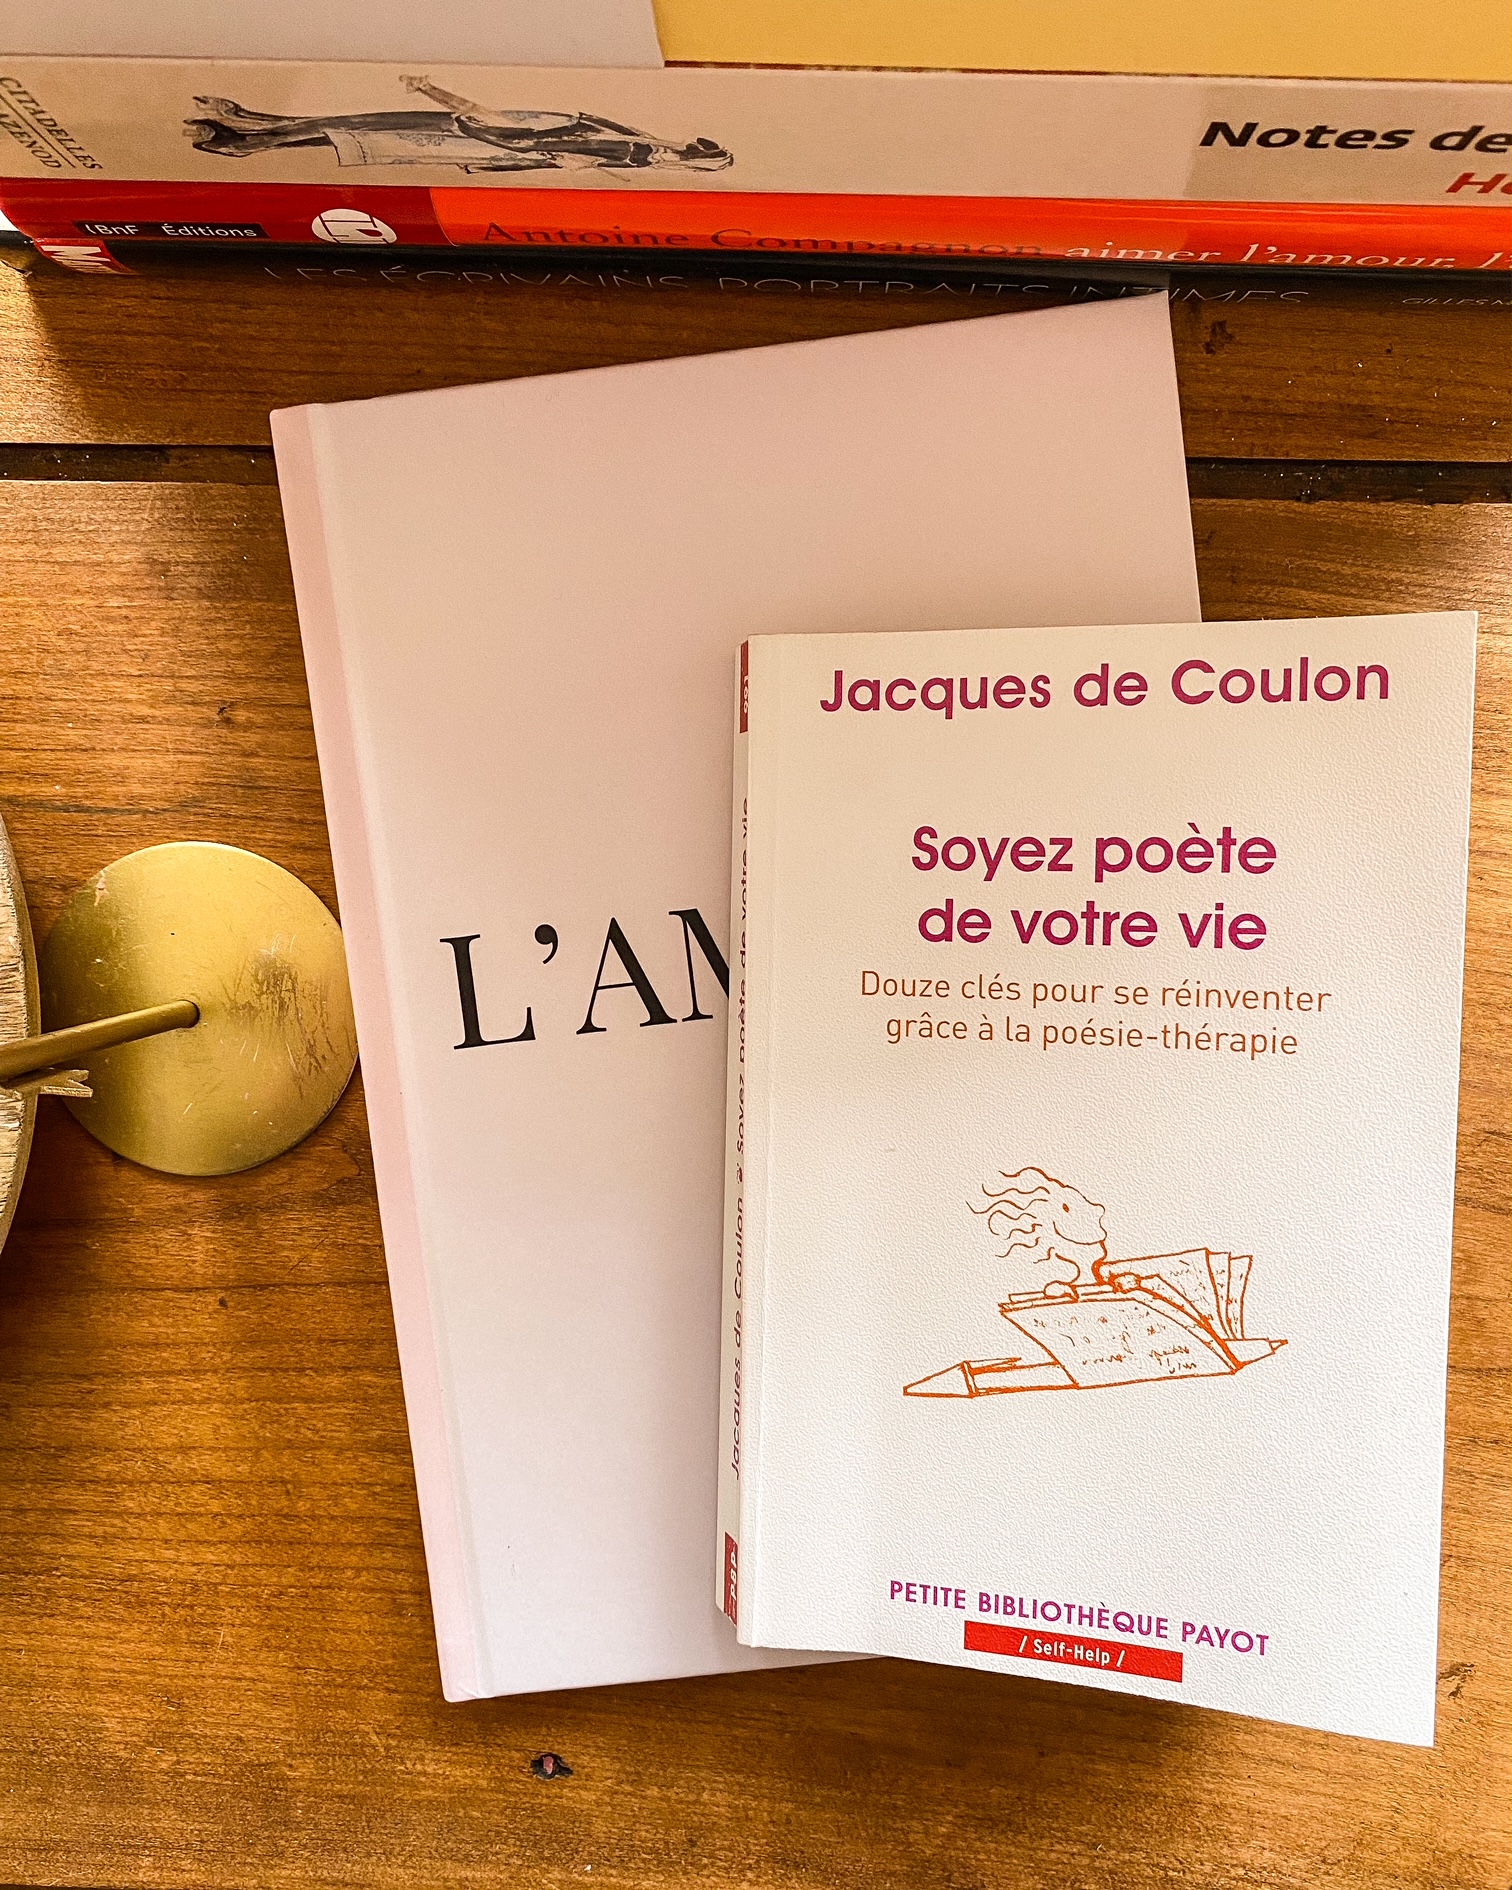 Soyez le poète de votre vie, de Jacques de Coulon : mieux vivre grâce à la poésie-thérapie